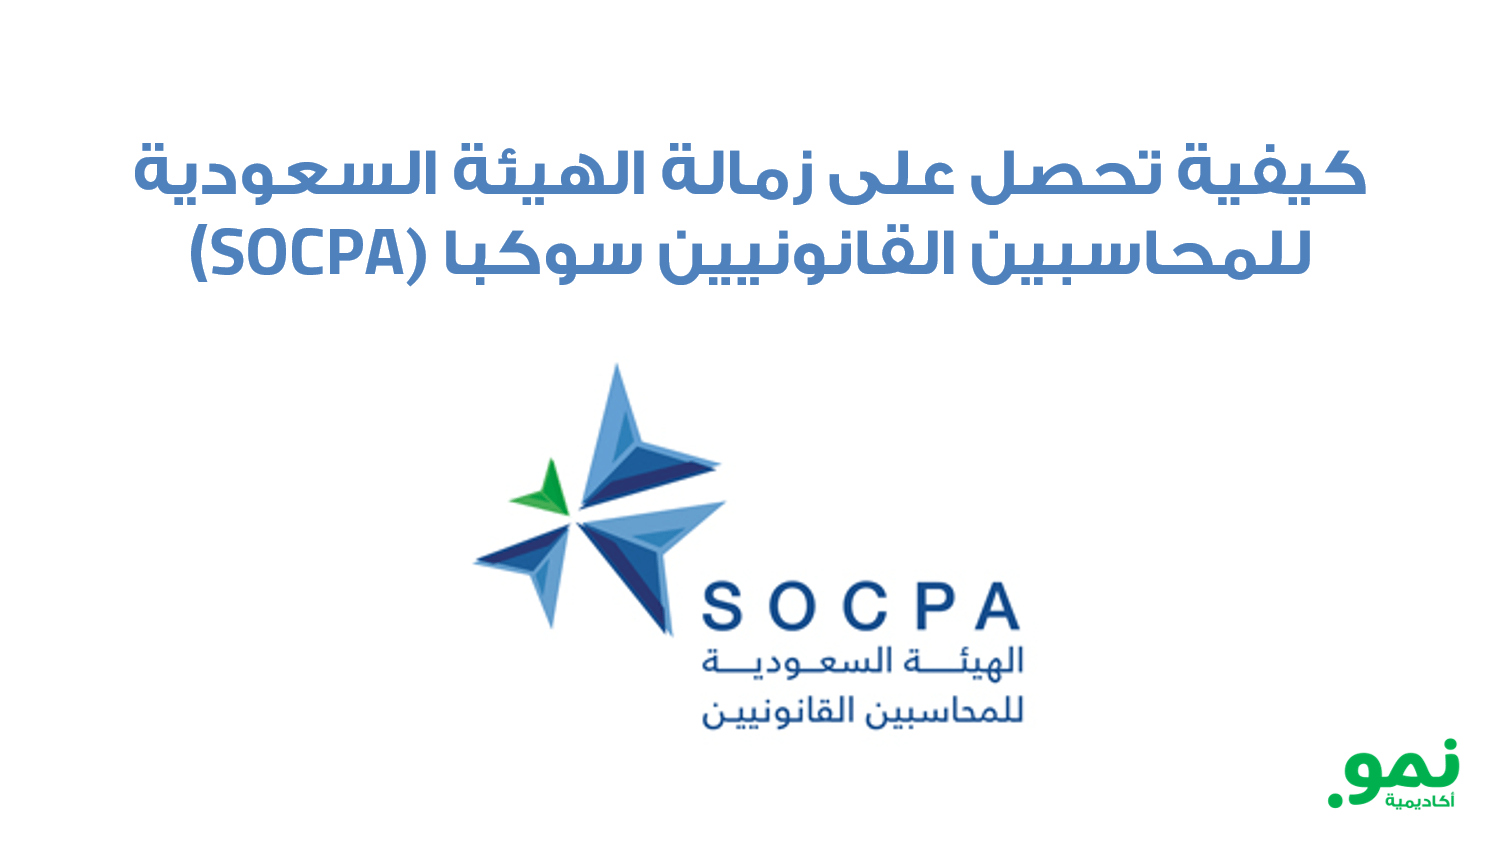 شهادة زمالة الهيئة SOCPA وطريقة التحضير لها عبر نمو